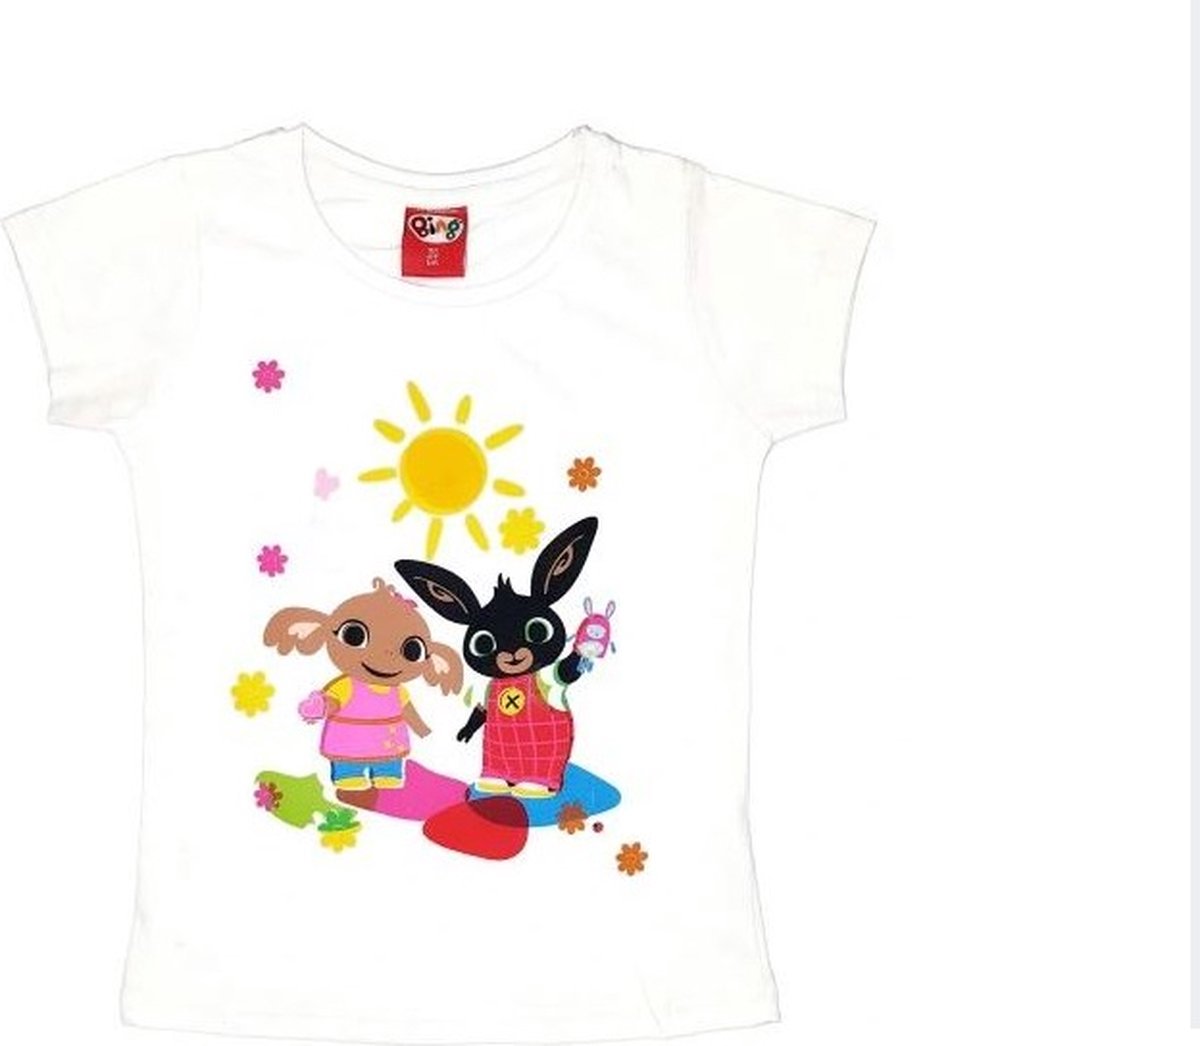 Bing Bunny - T-shirt Bing Bunny - meisjes - maat 116